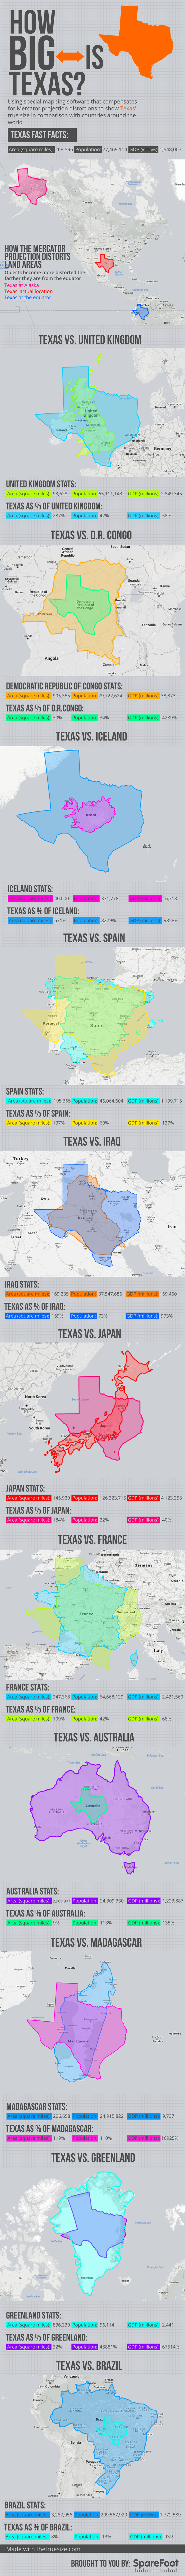 How Big is Texas?